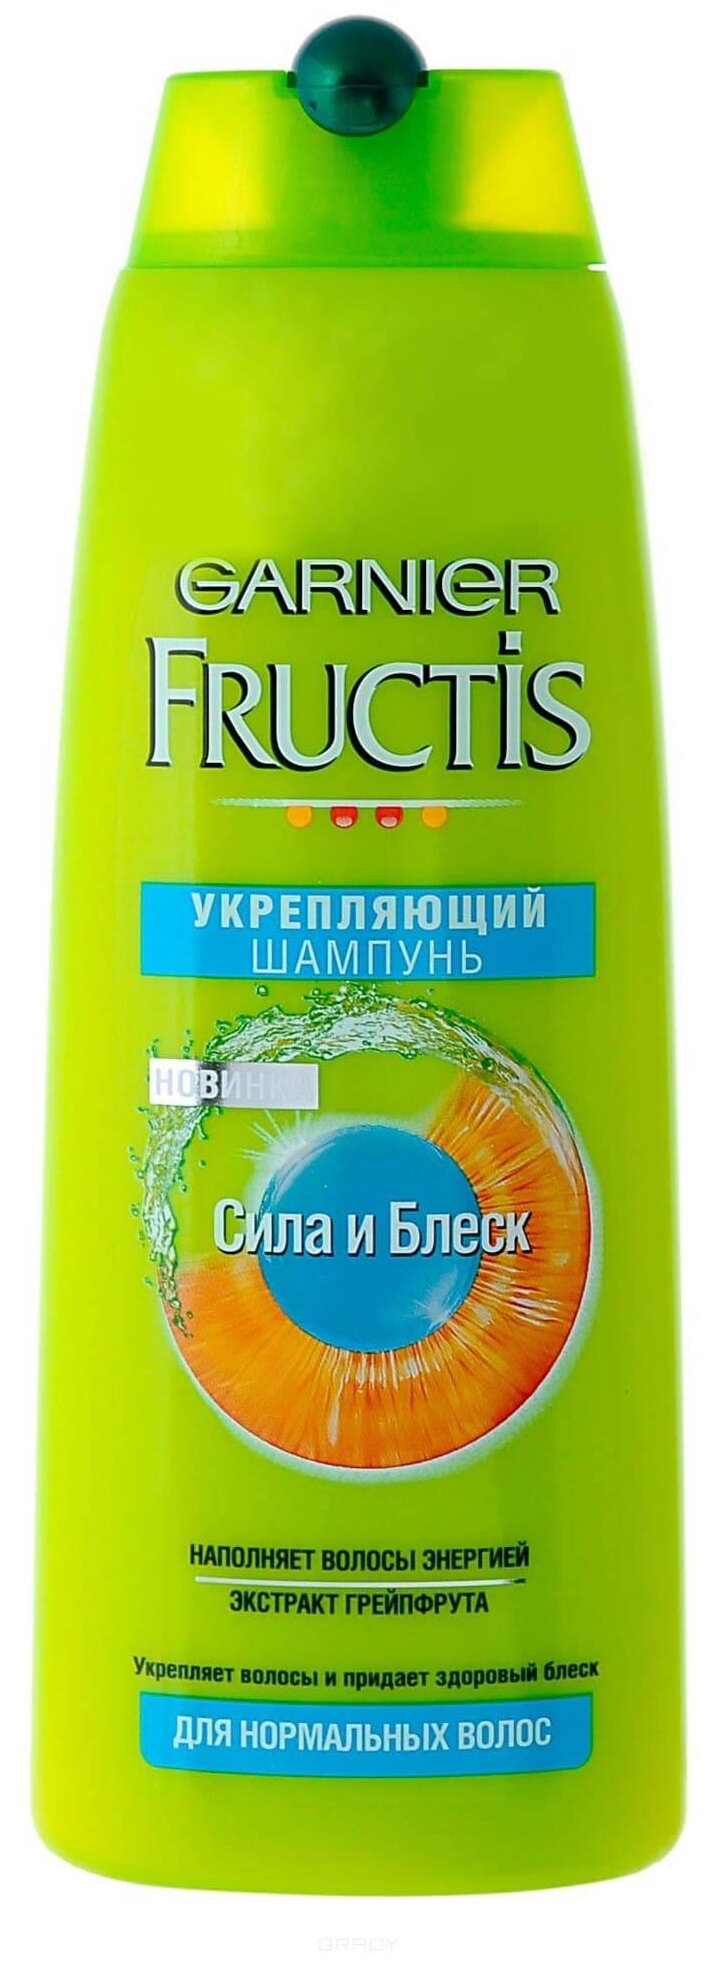 Шампунь Fructis "Сила и блеск" для нормальных волос, 400мл Garnier - фото №2